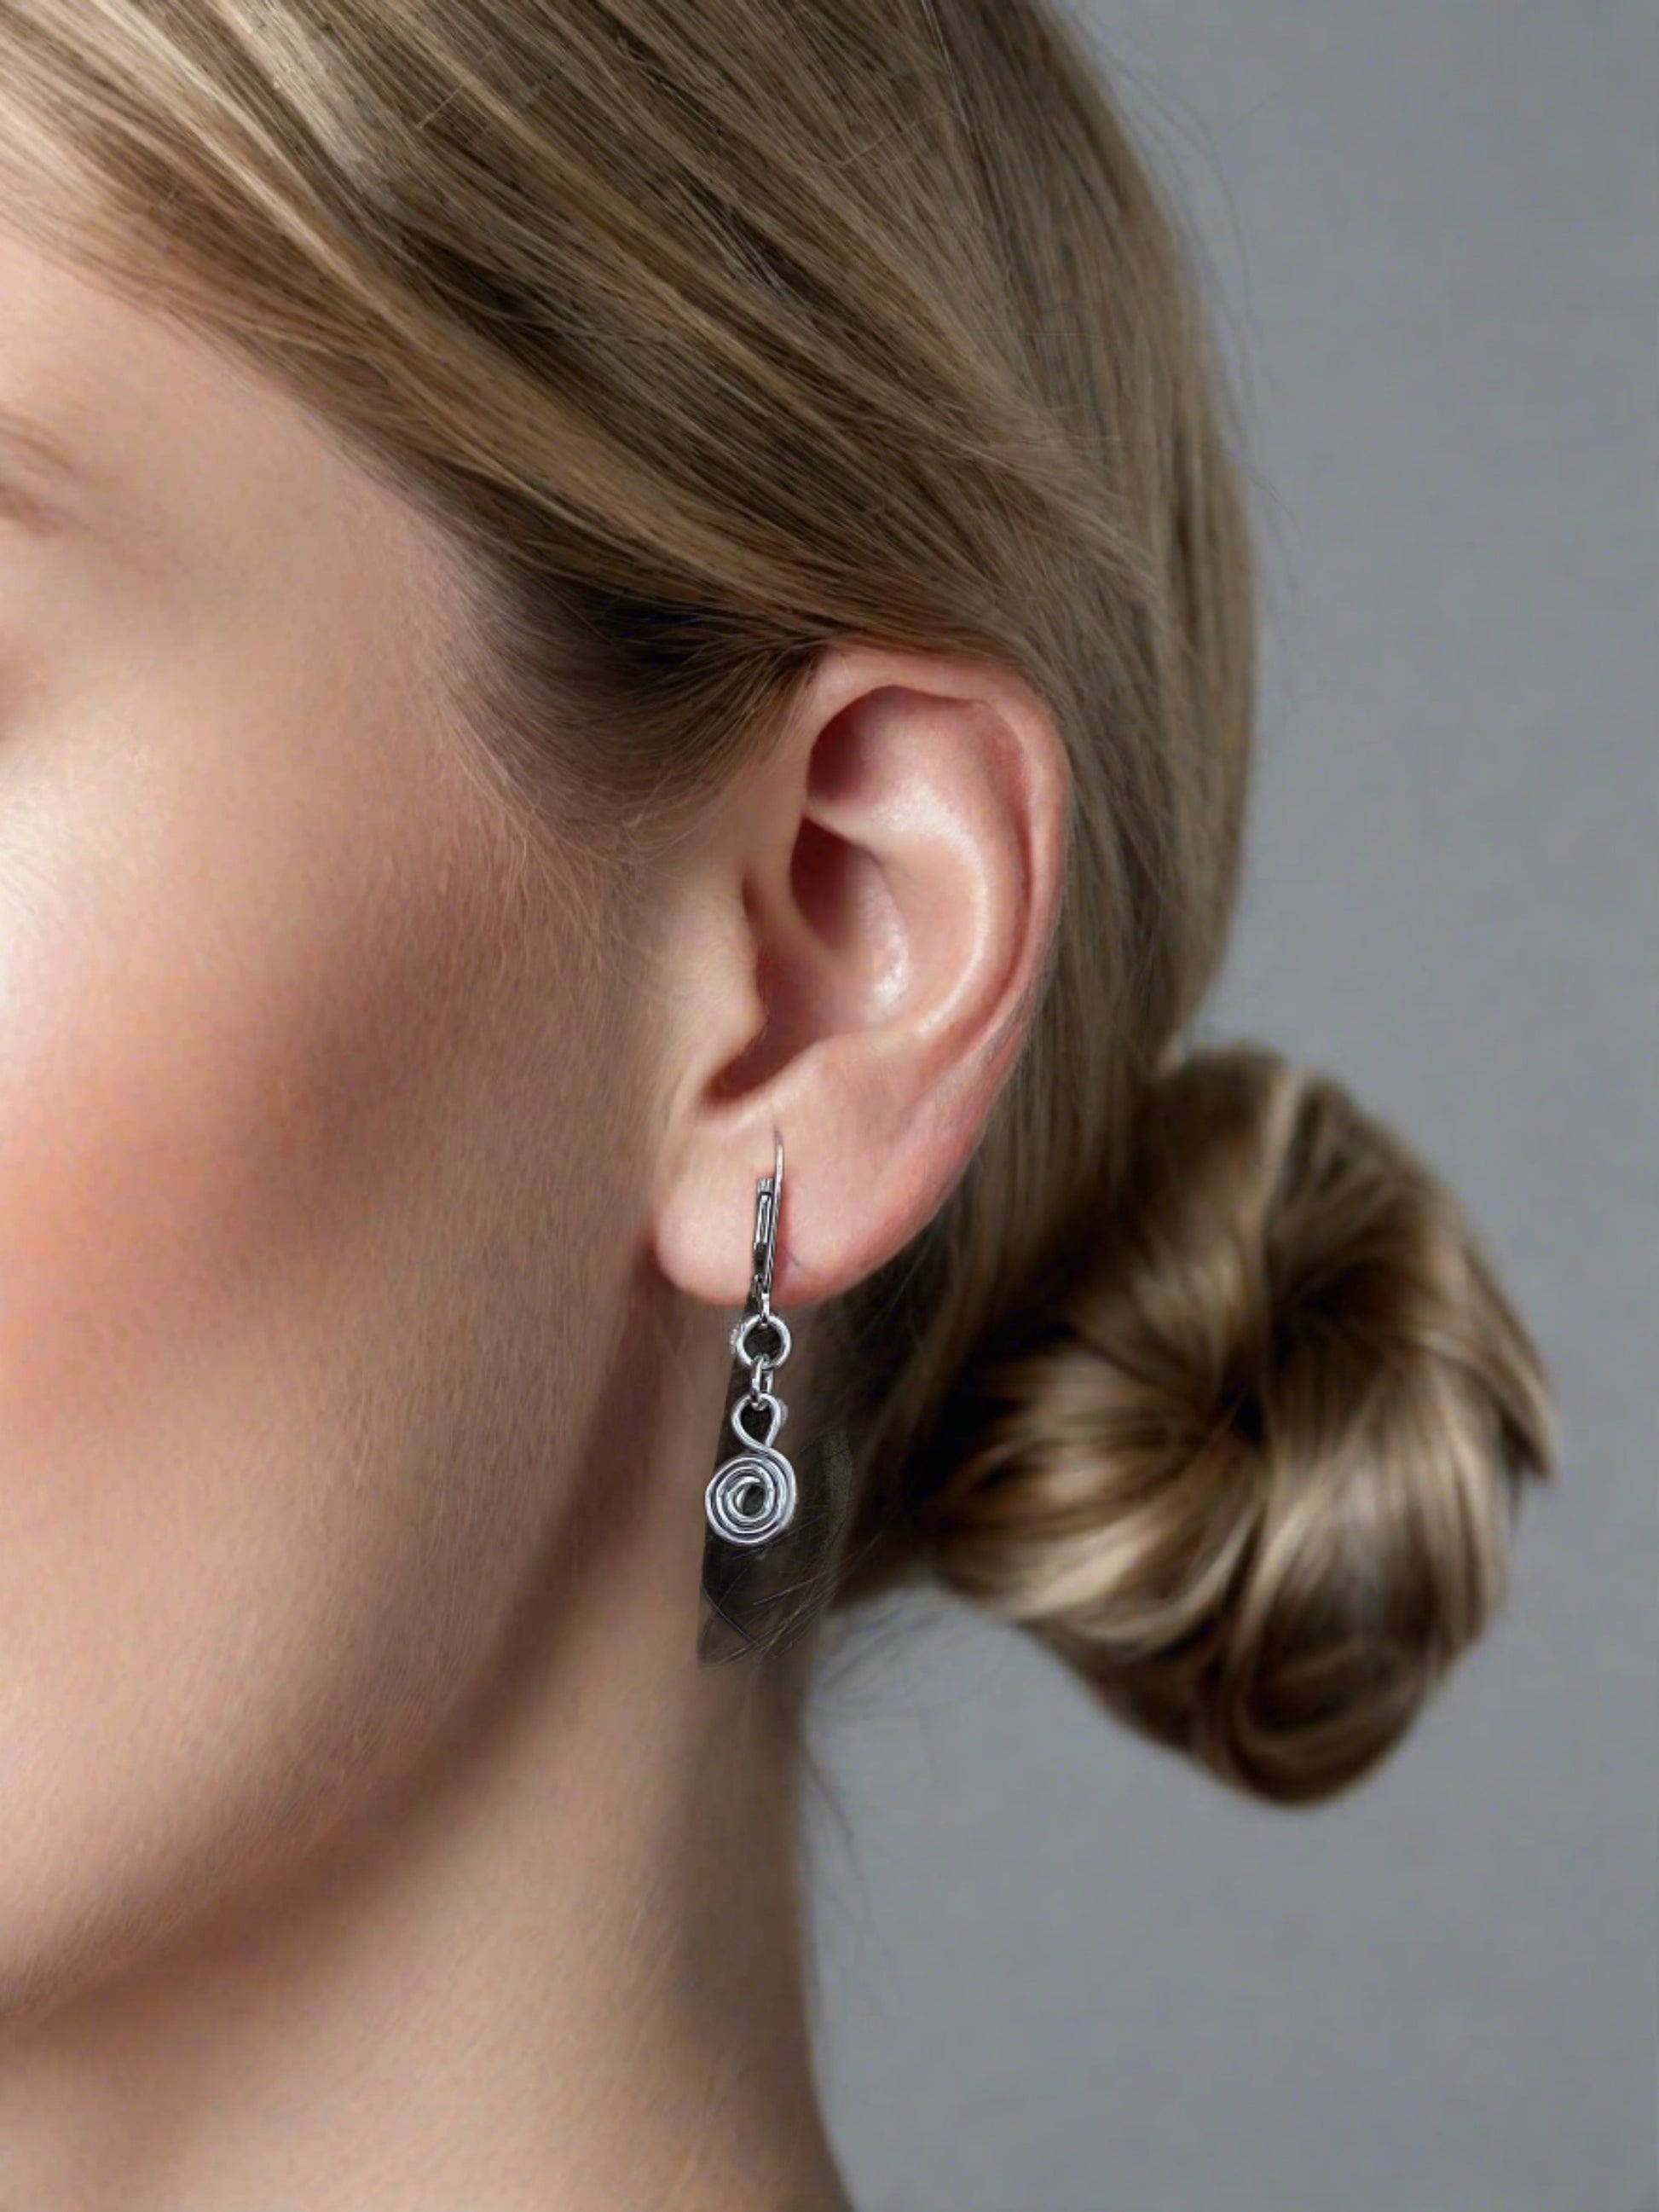 Gratitude Symbol Earrings - Lightweight & Meaningful Daily Jewelry - Jaclyn Nicole